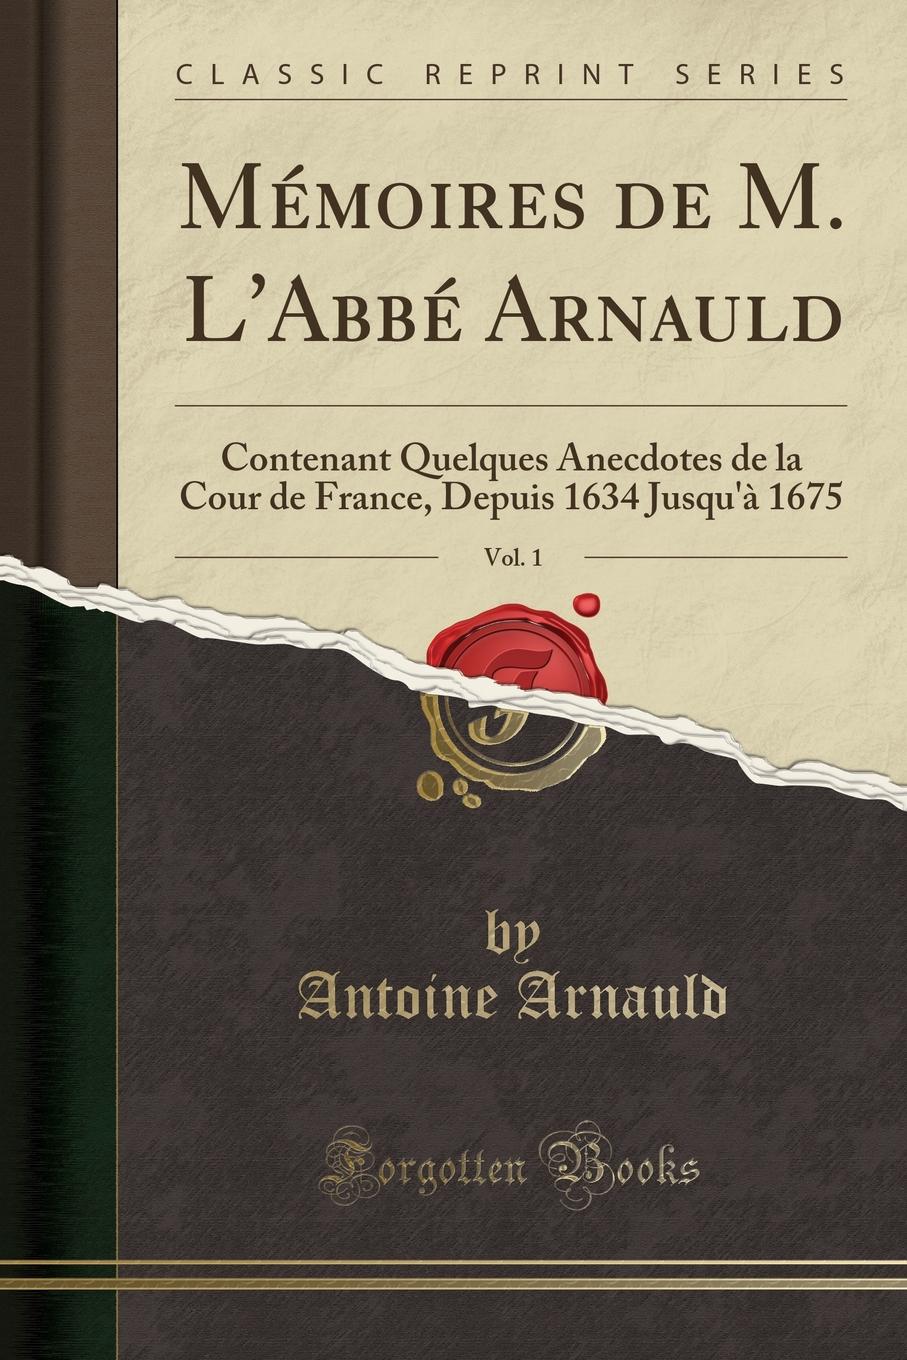 Memoires de M. L.Abbe Arnauld, Vol. 1. Contenant Quelques Anecdotes de la Cour de France, Depuis 1634 Jusqu.a 1675 (Classic Reprint)